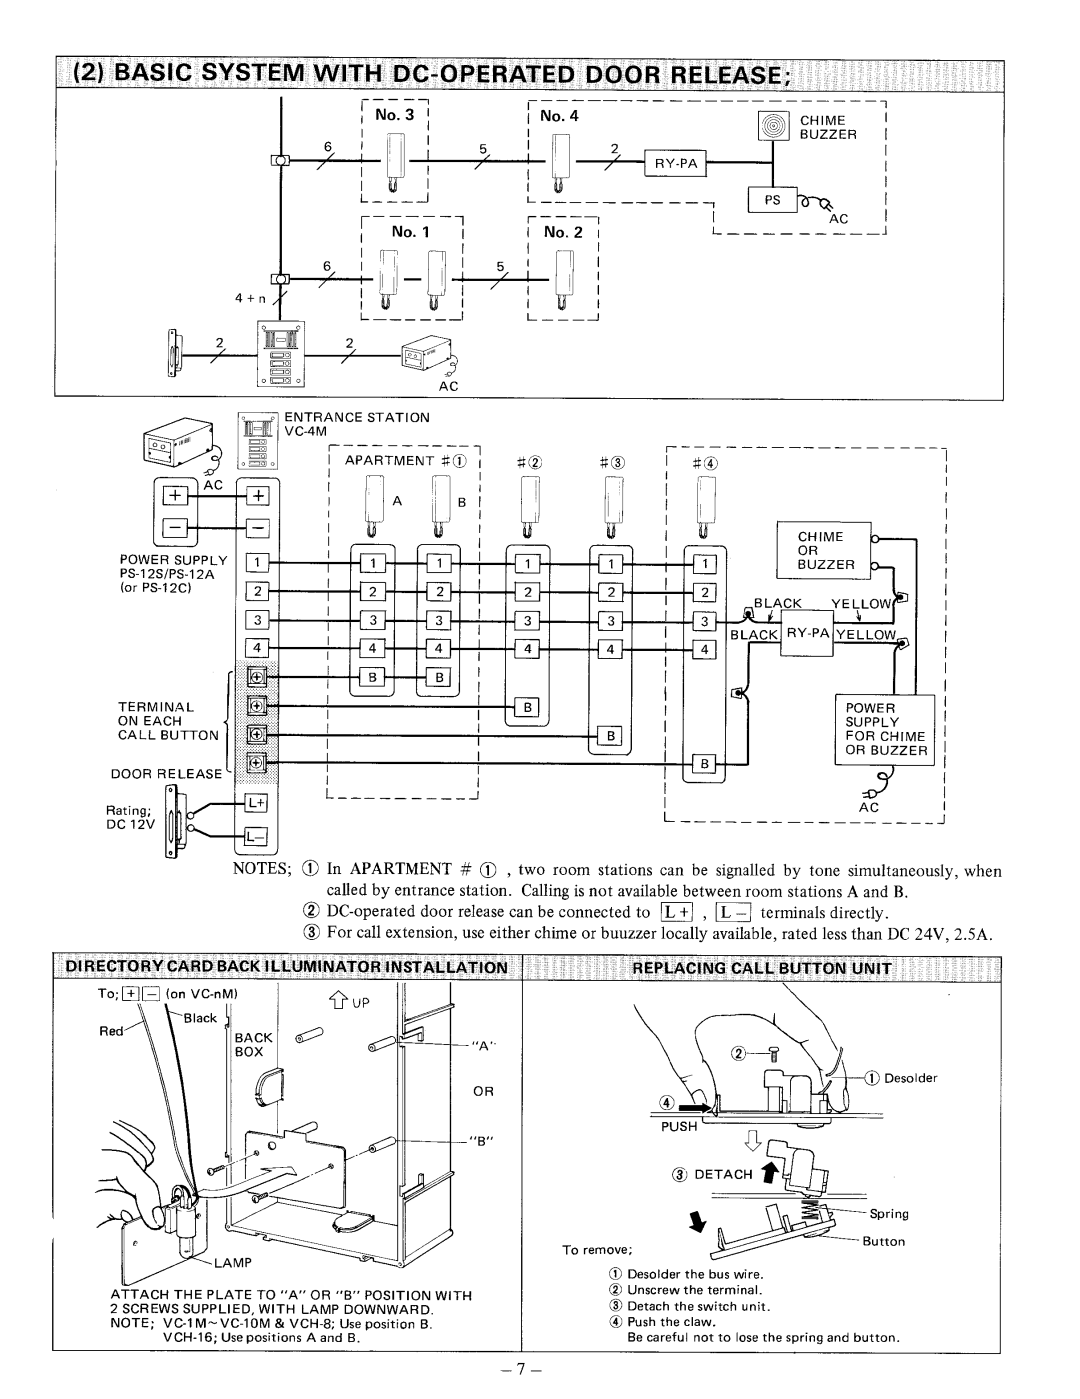 Aiphone VCH-16, VC-K, VCH-8, VC-58MT, VC-26MT manual 